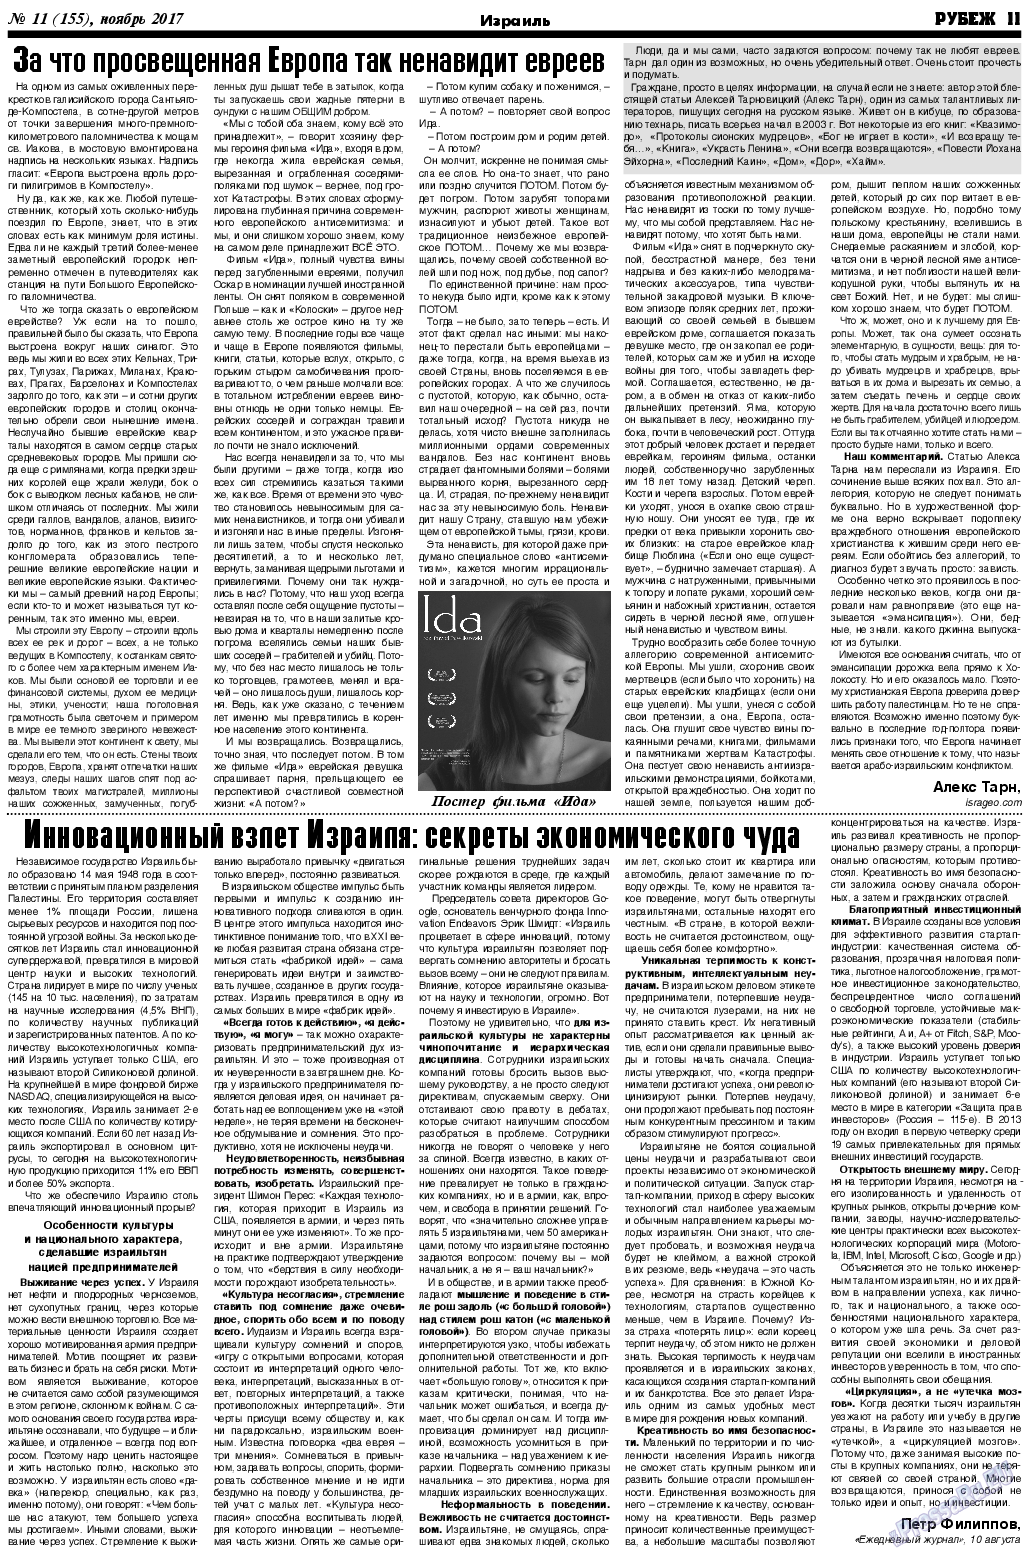 Рубеж (газета). 2017 год, номер 11, стр. 11